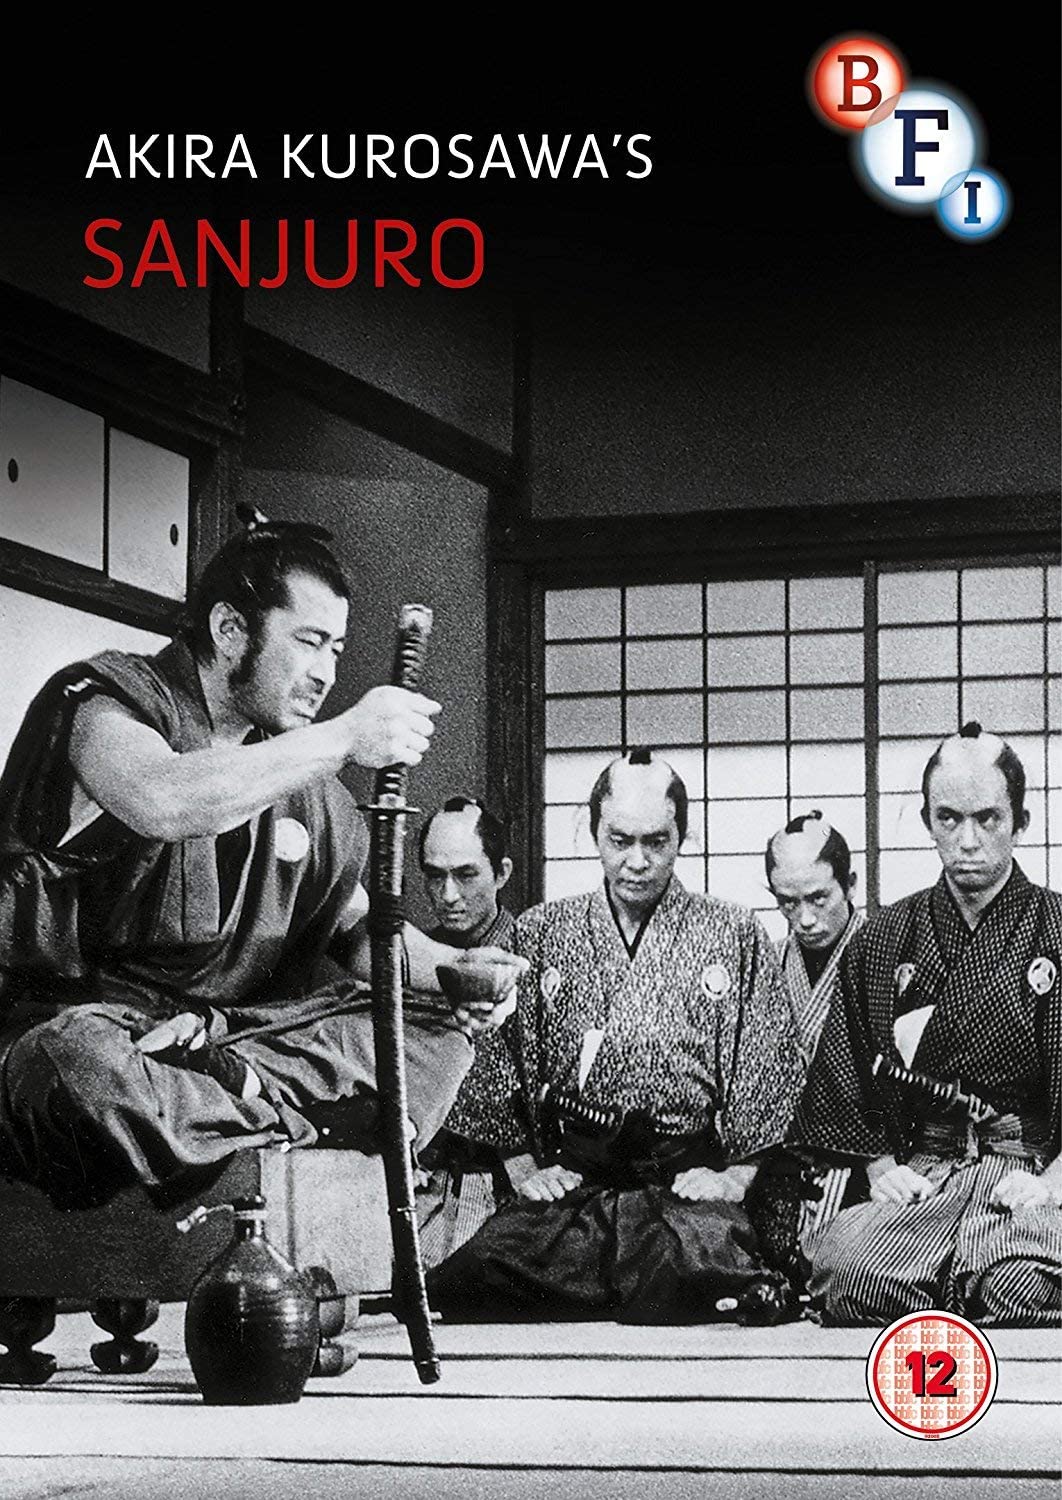 Sanjuro - Jidaigeki/Samurai [DVD]